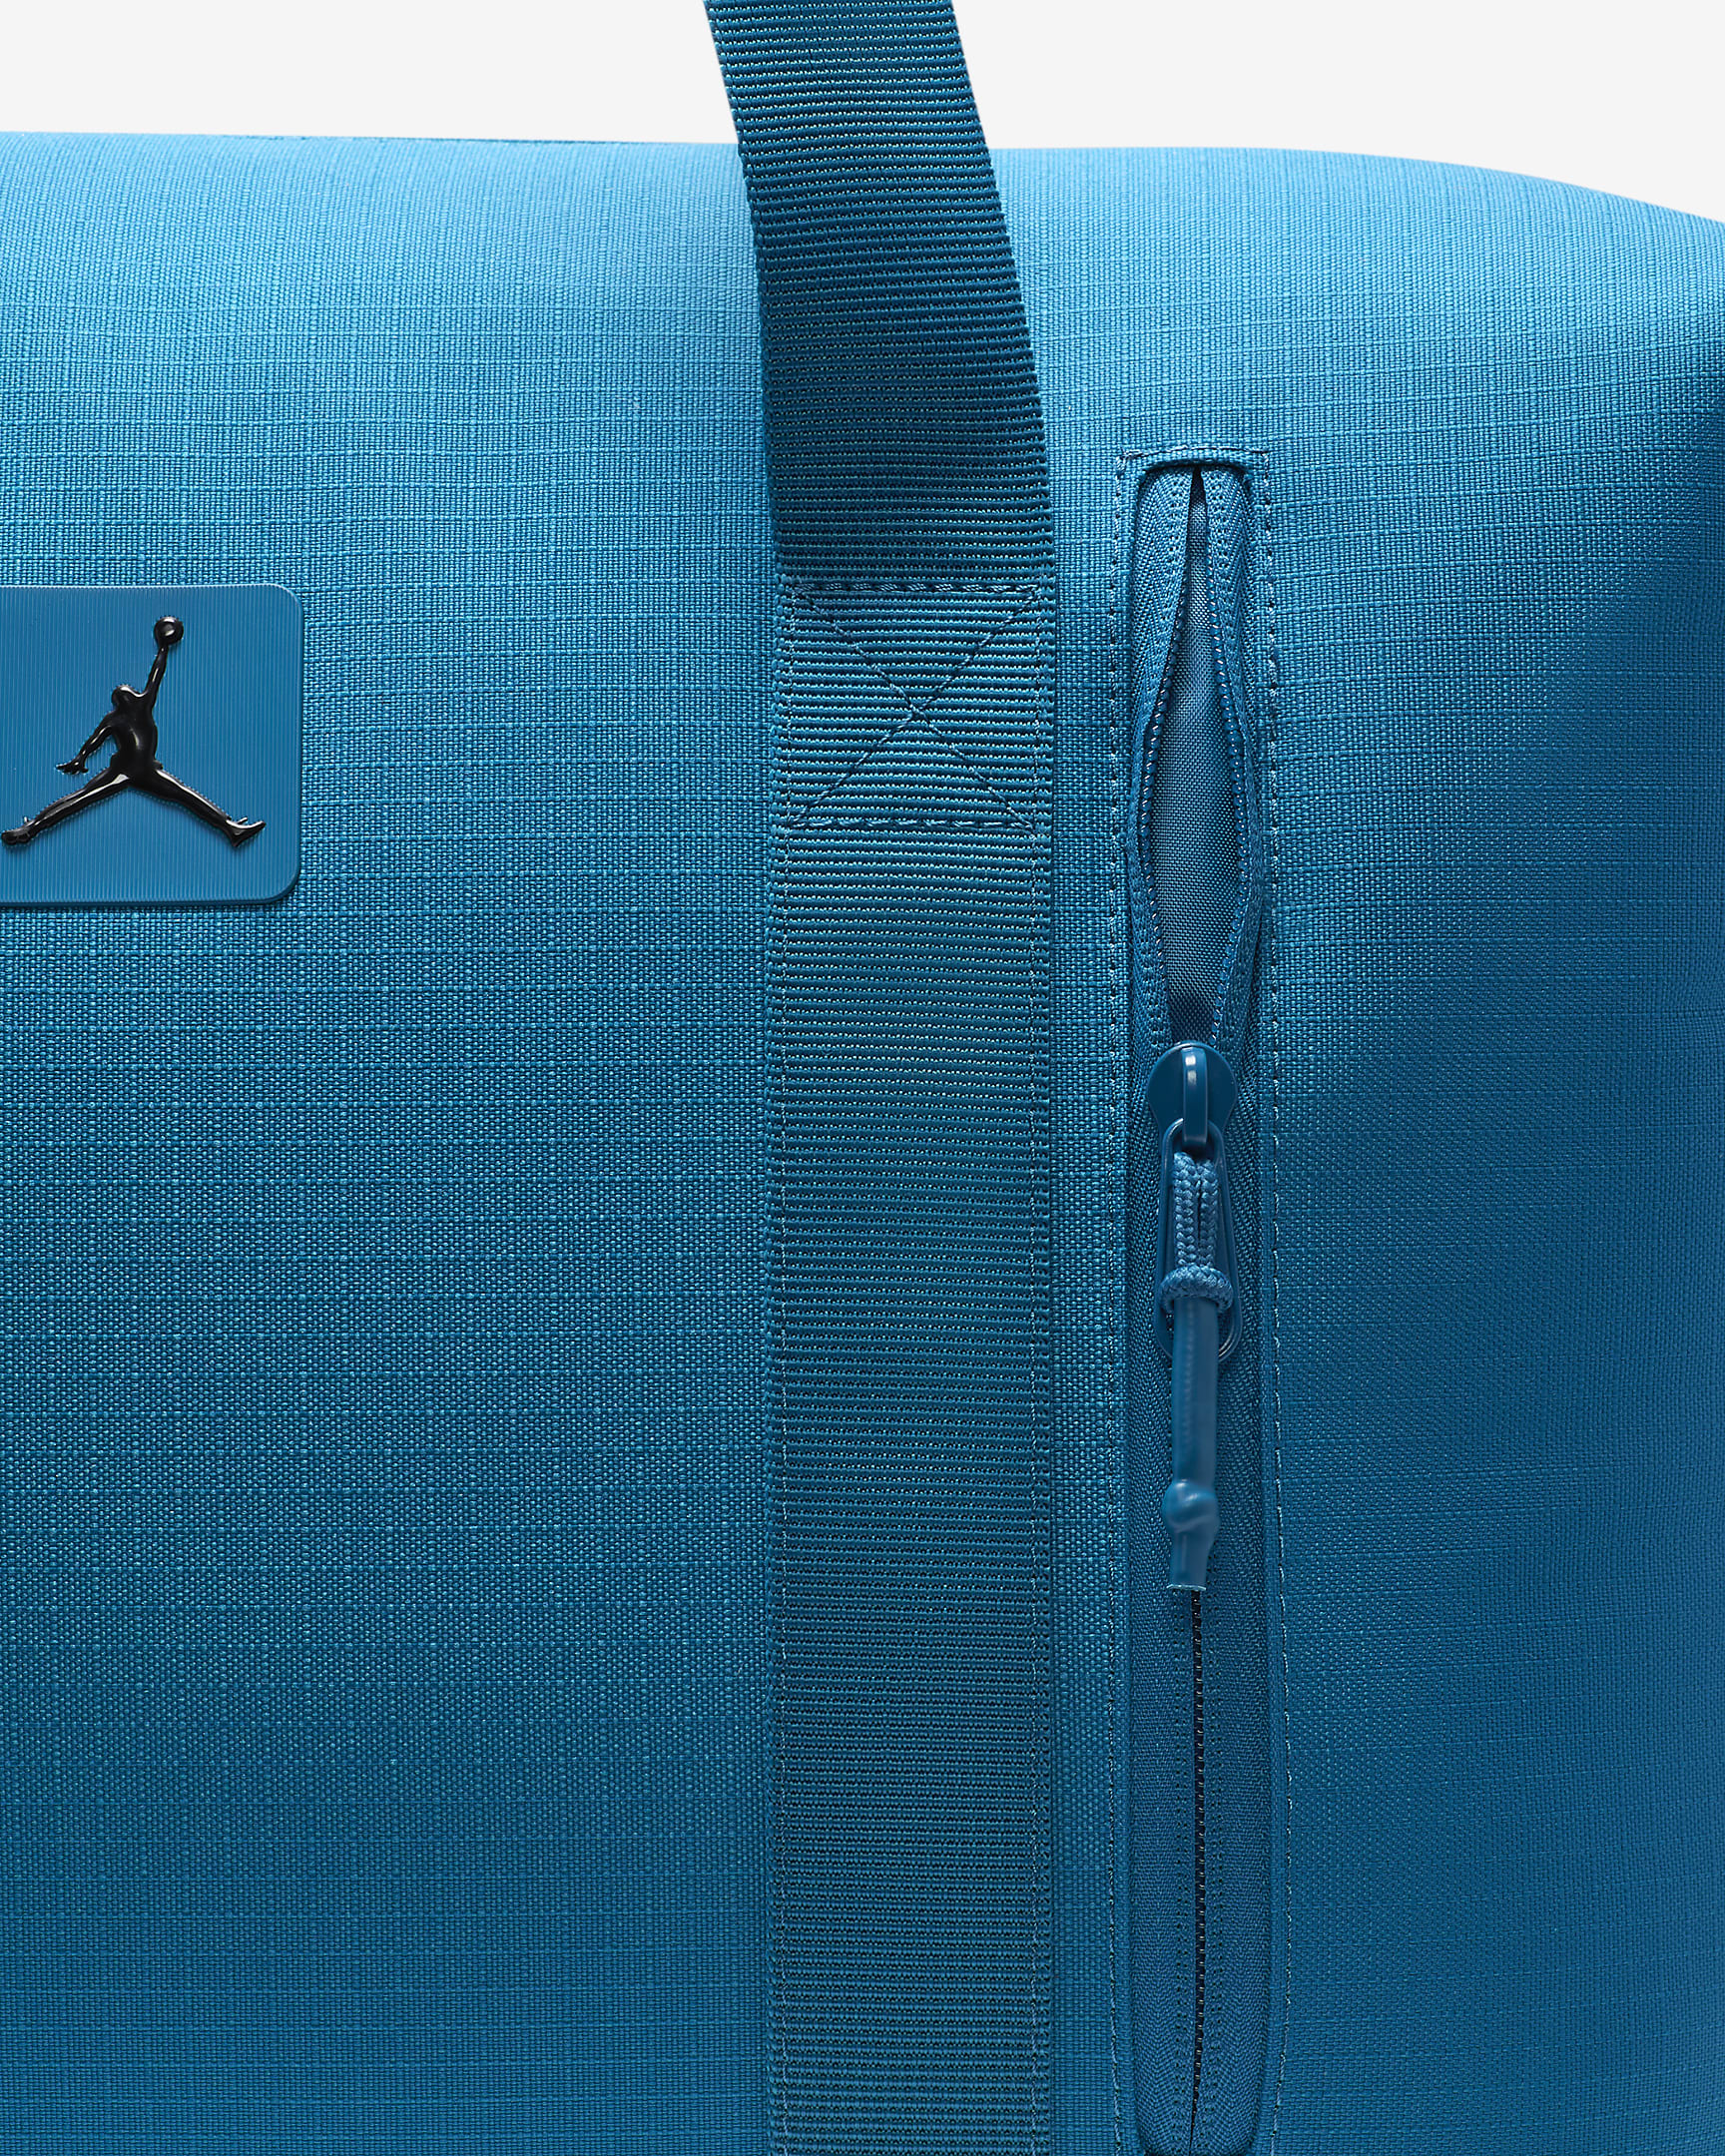 Jordan Flight Duffle Sporttasche (35 l) - Industrial Blue